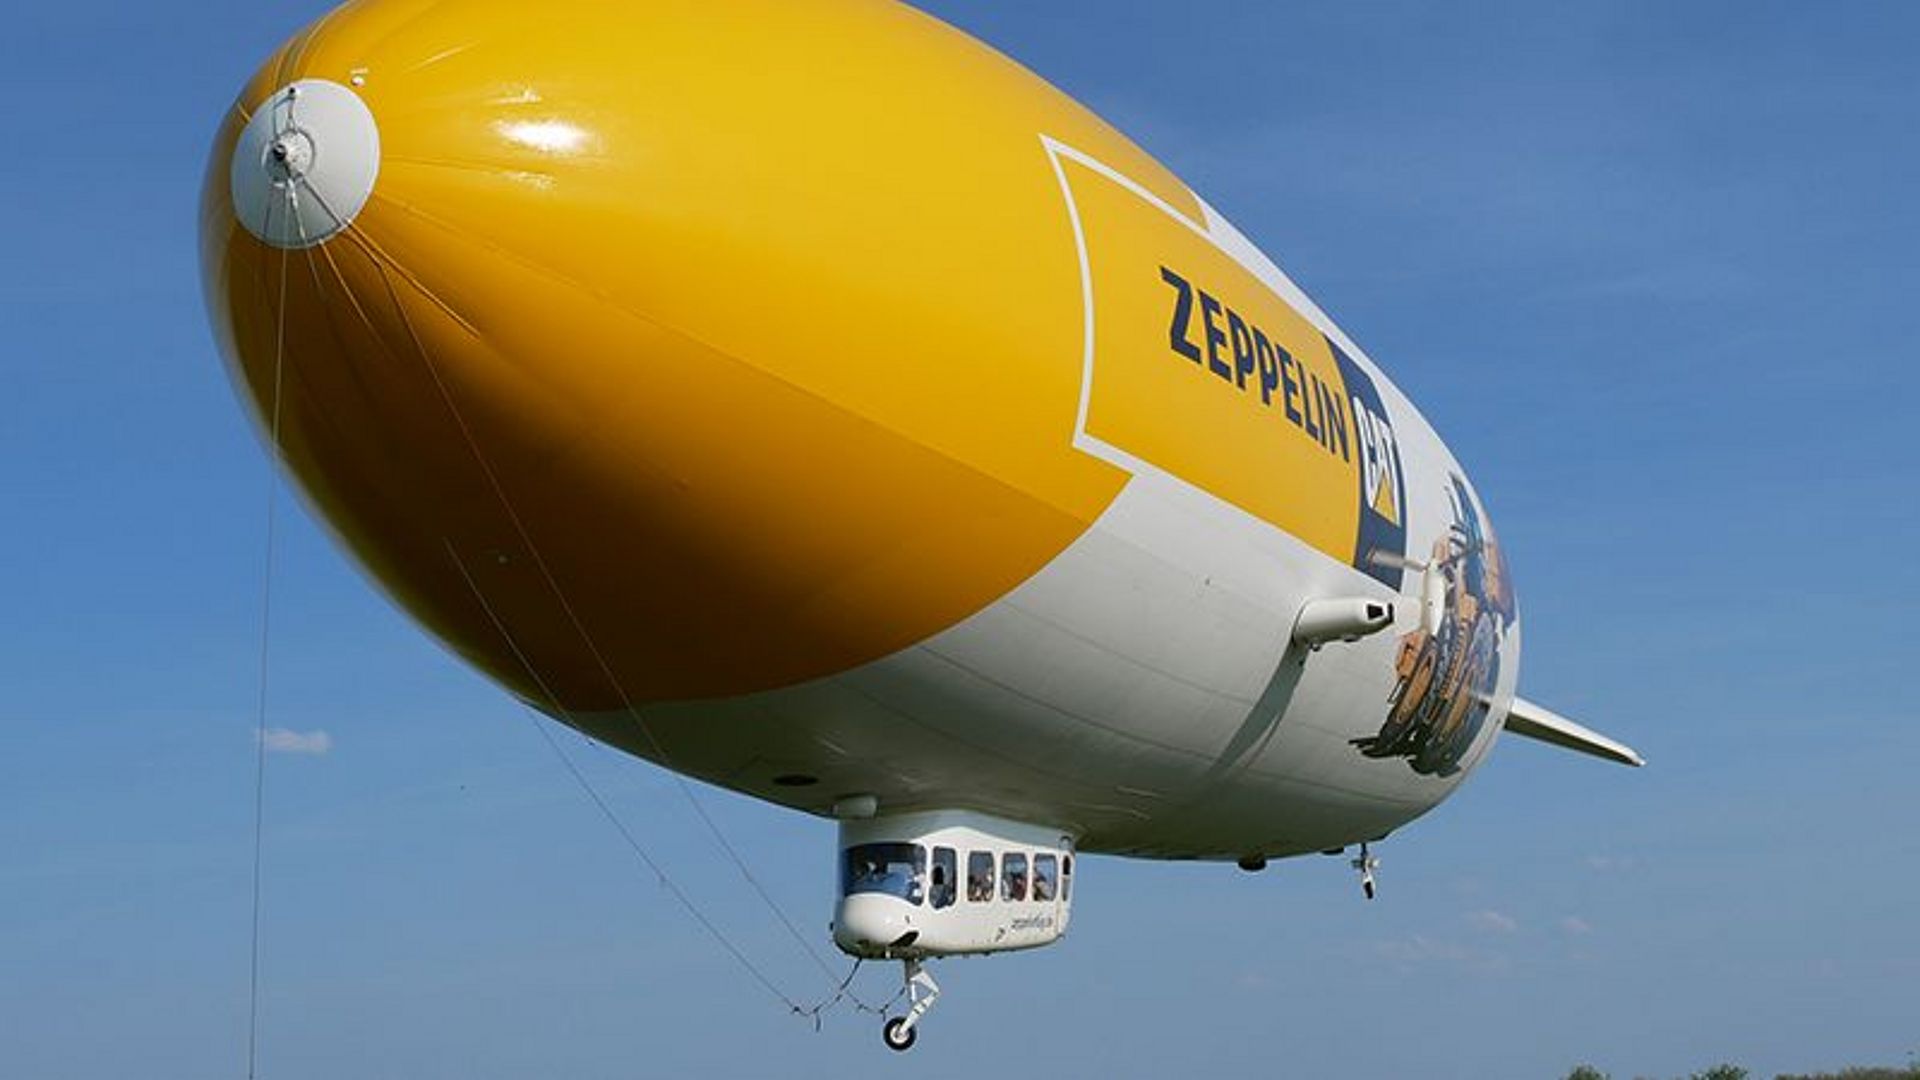 Zeppelin in der Luft.